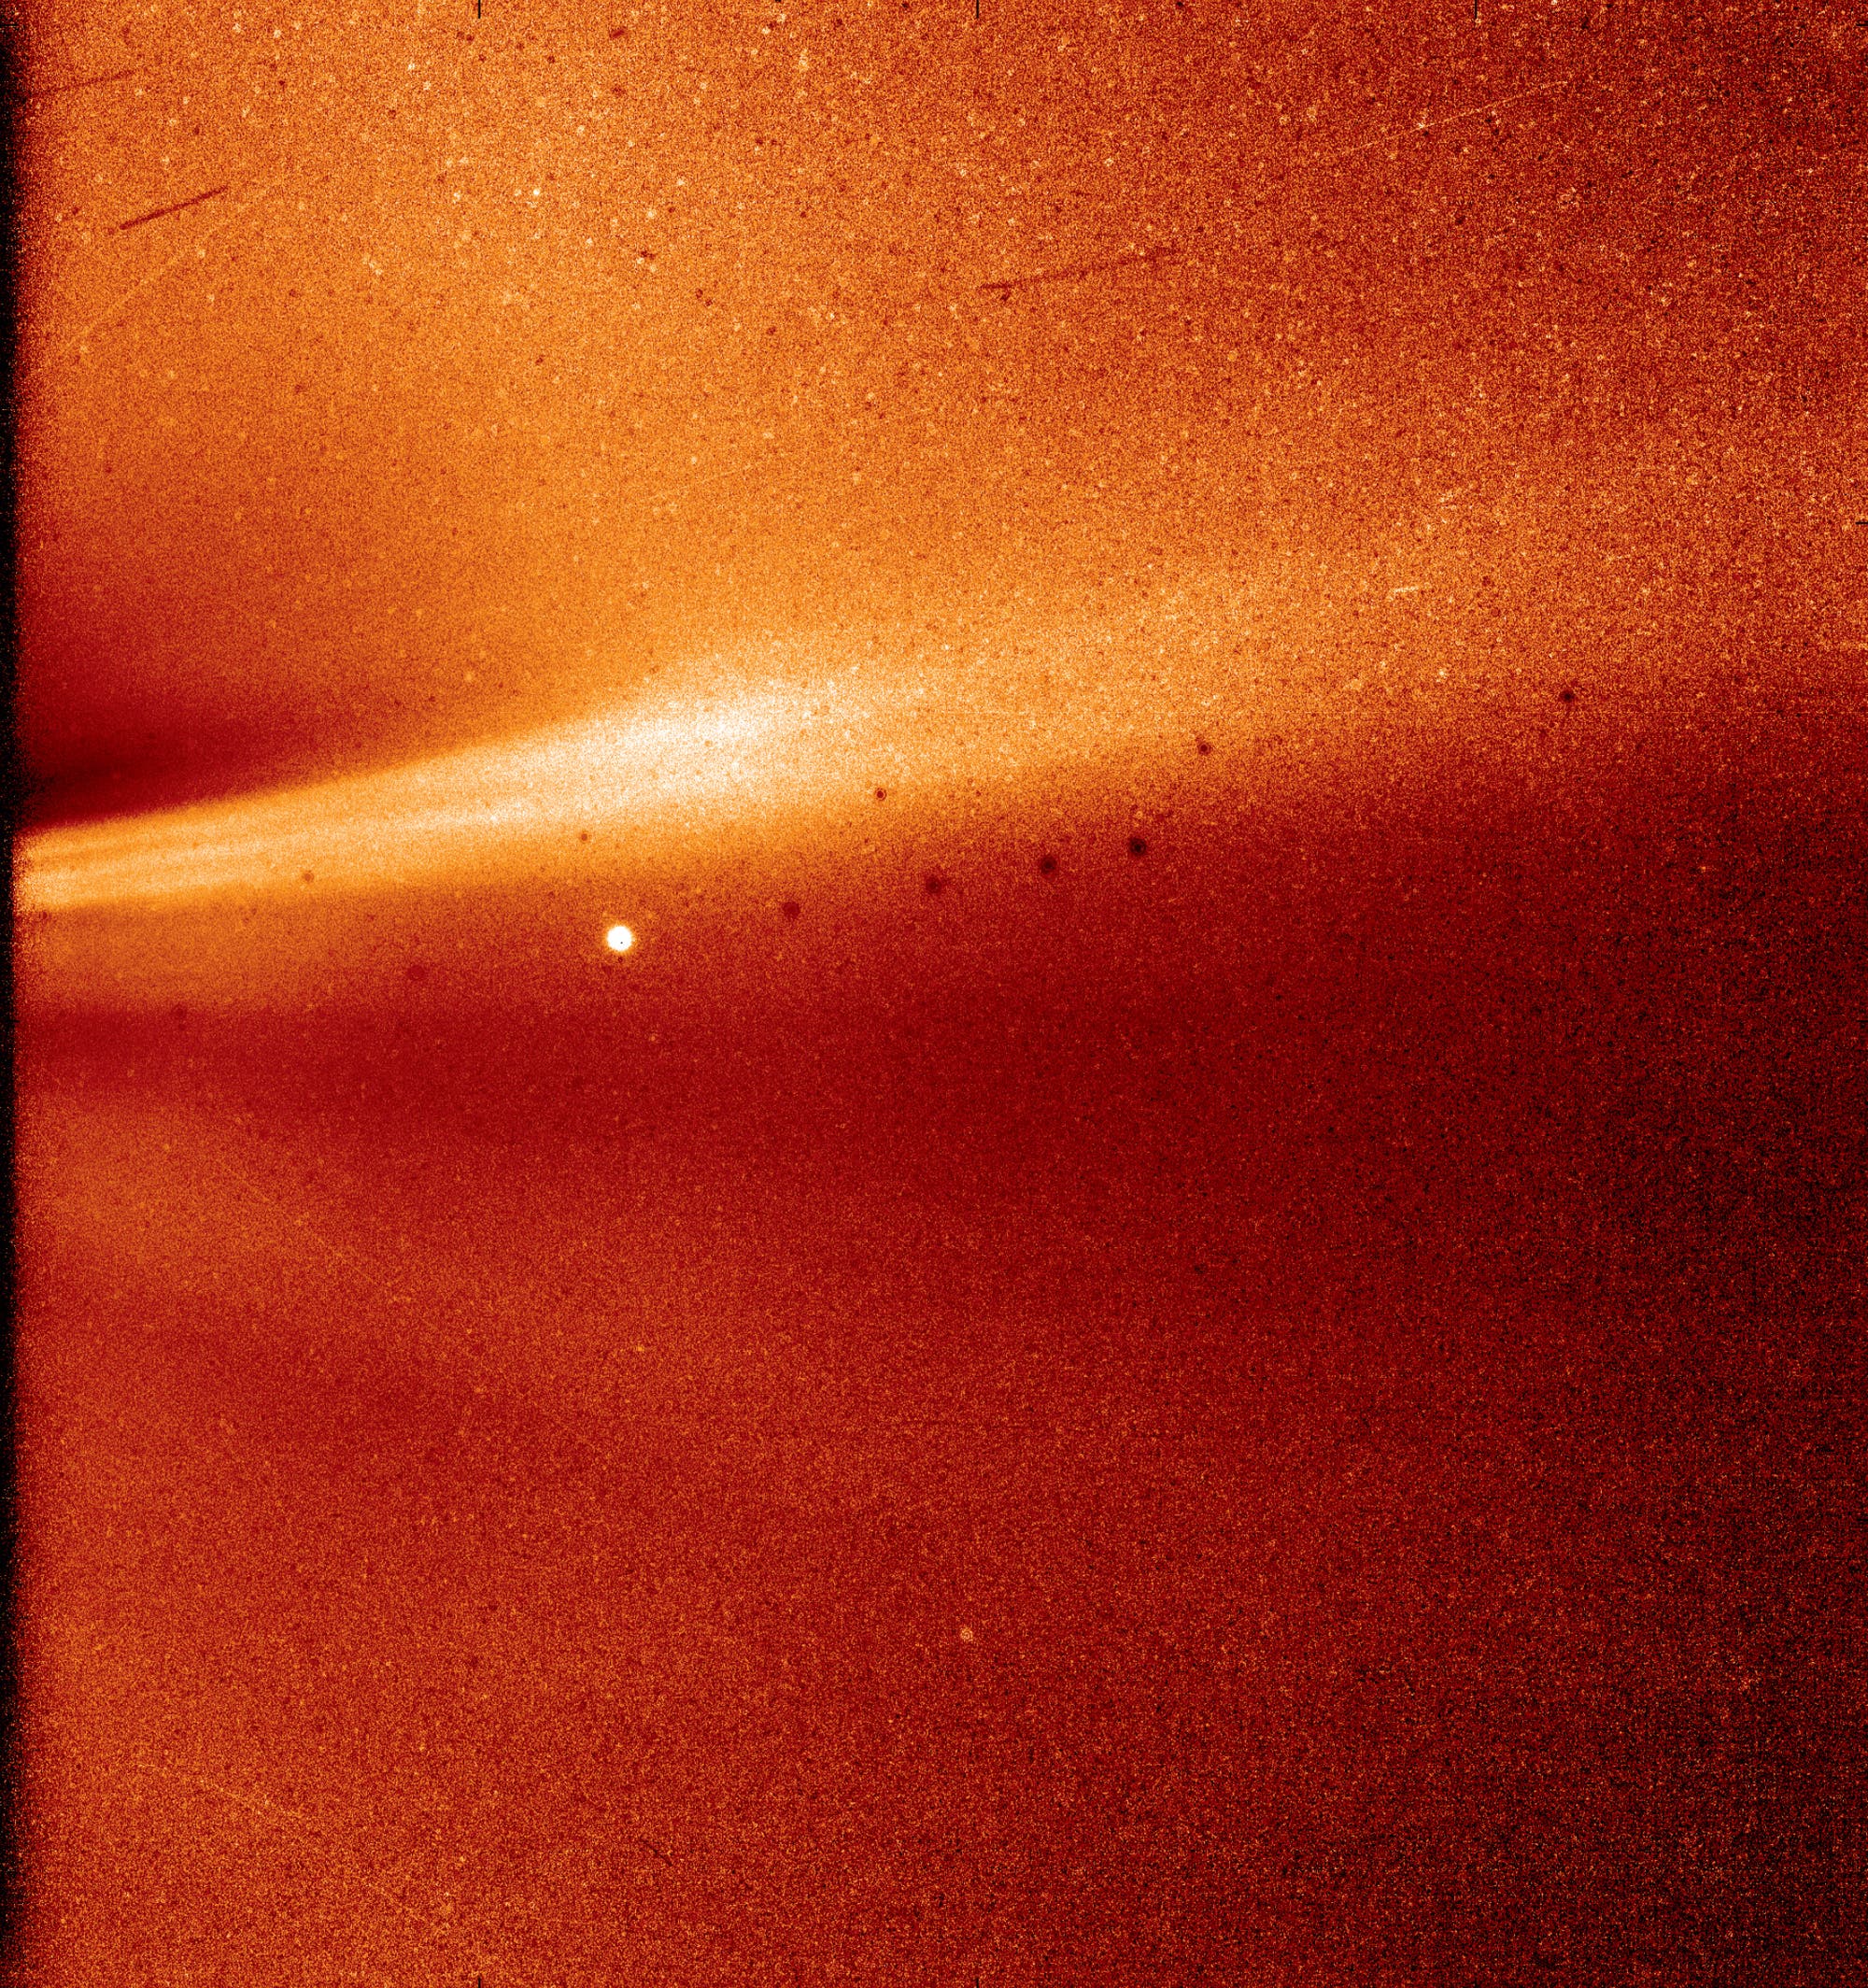 Aufnahme aus der Sonnenatmosphäre